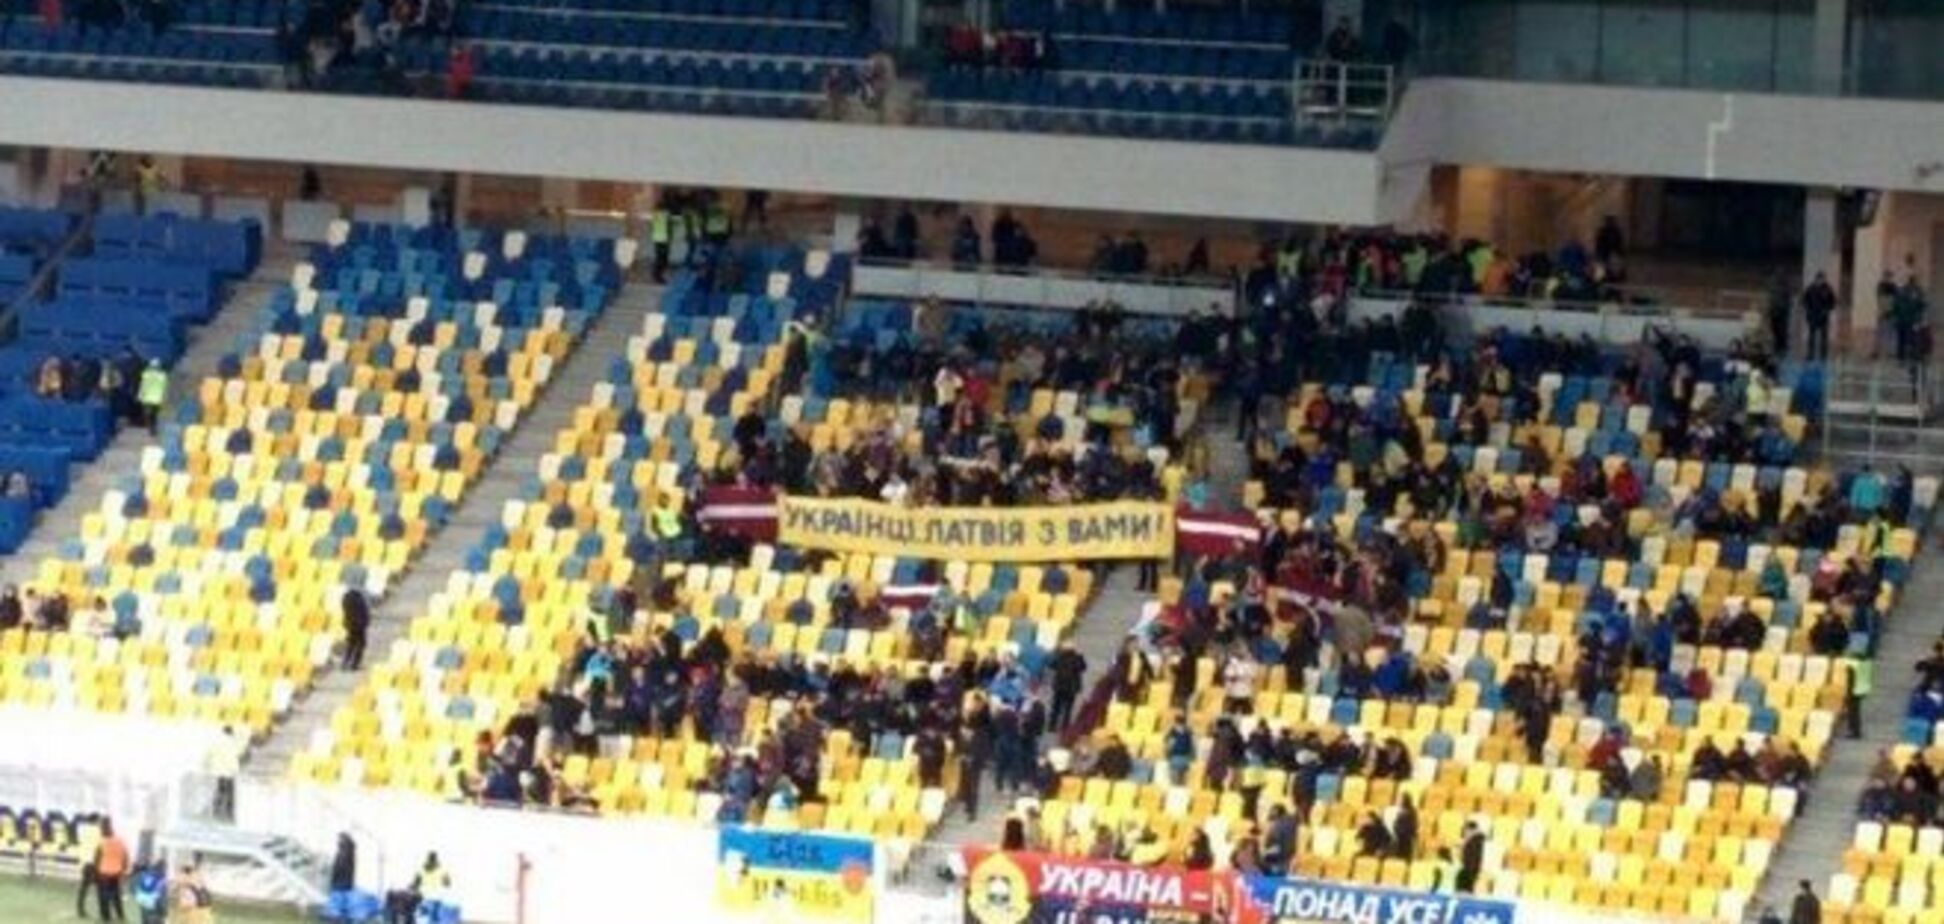 Фанаты на матче Украина - Латвия отличились патриотичным баннером